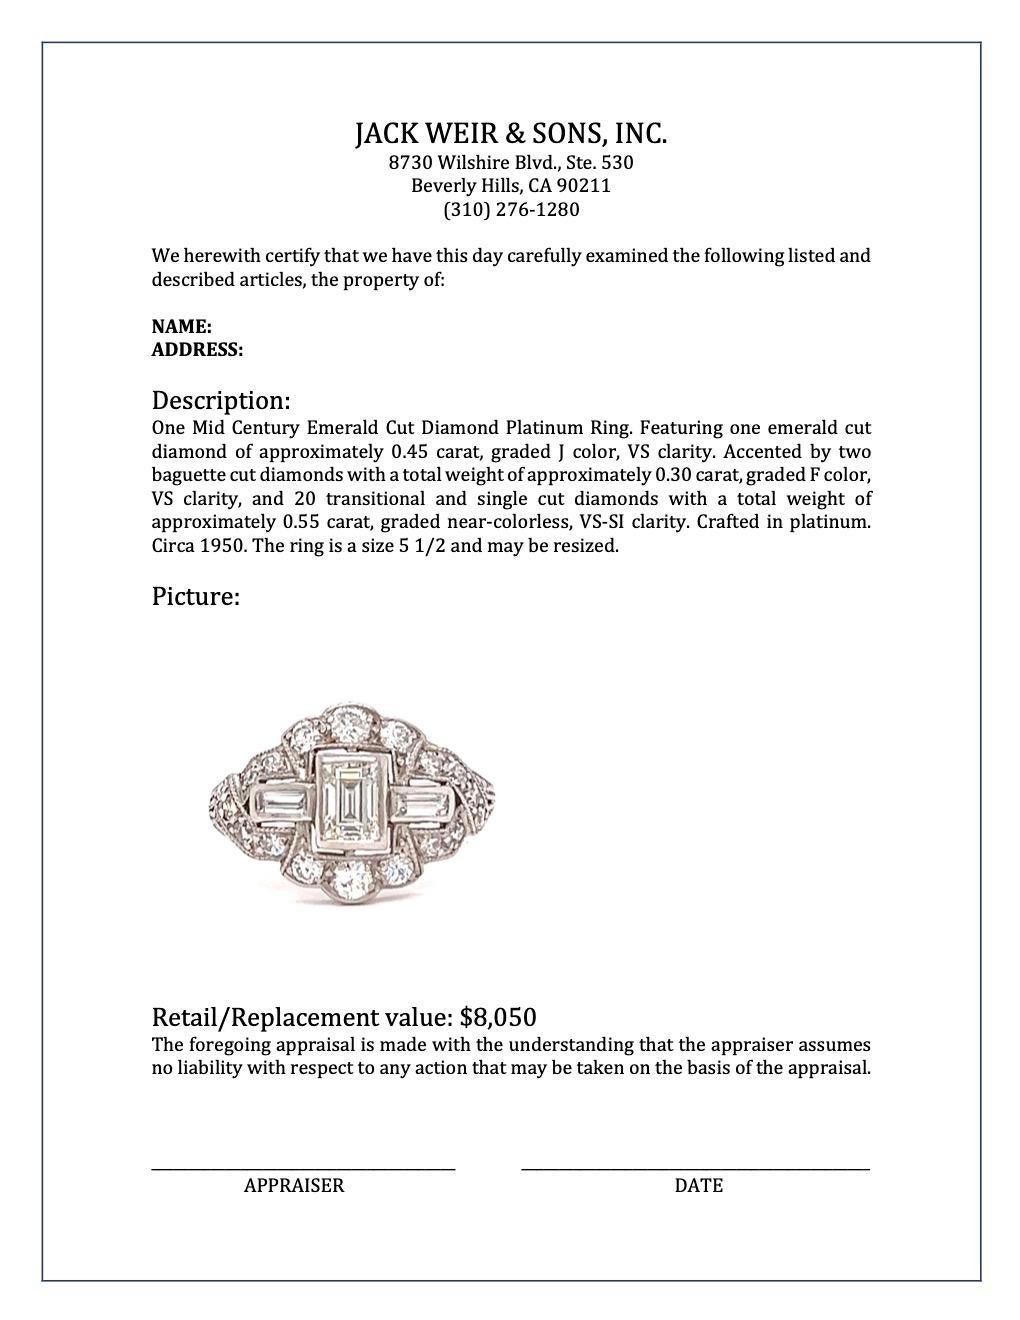 Mid-Century 0.45 Carat Emerald Cut Diamond Platinum Ring 4